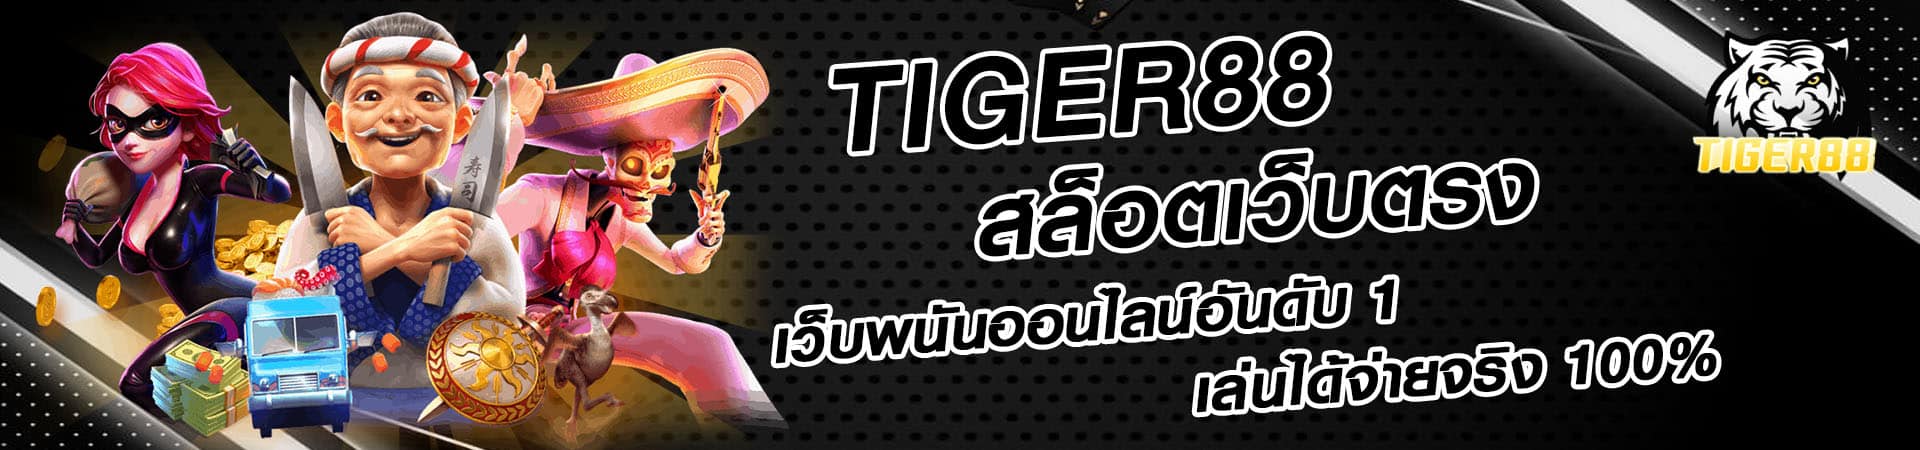 tiger88-banner1